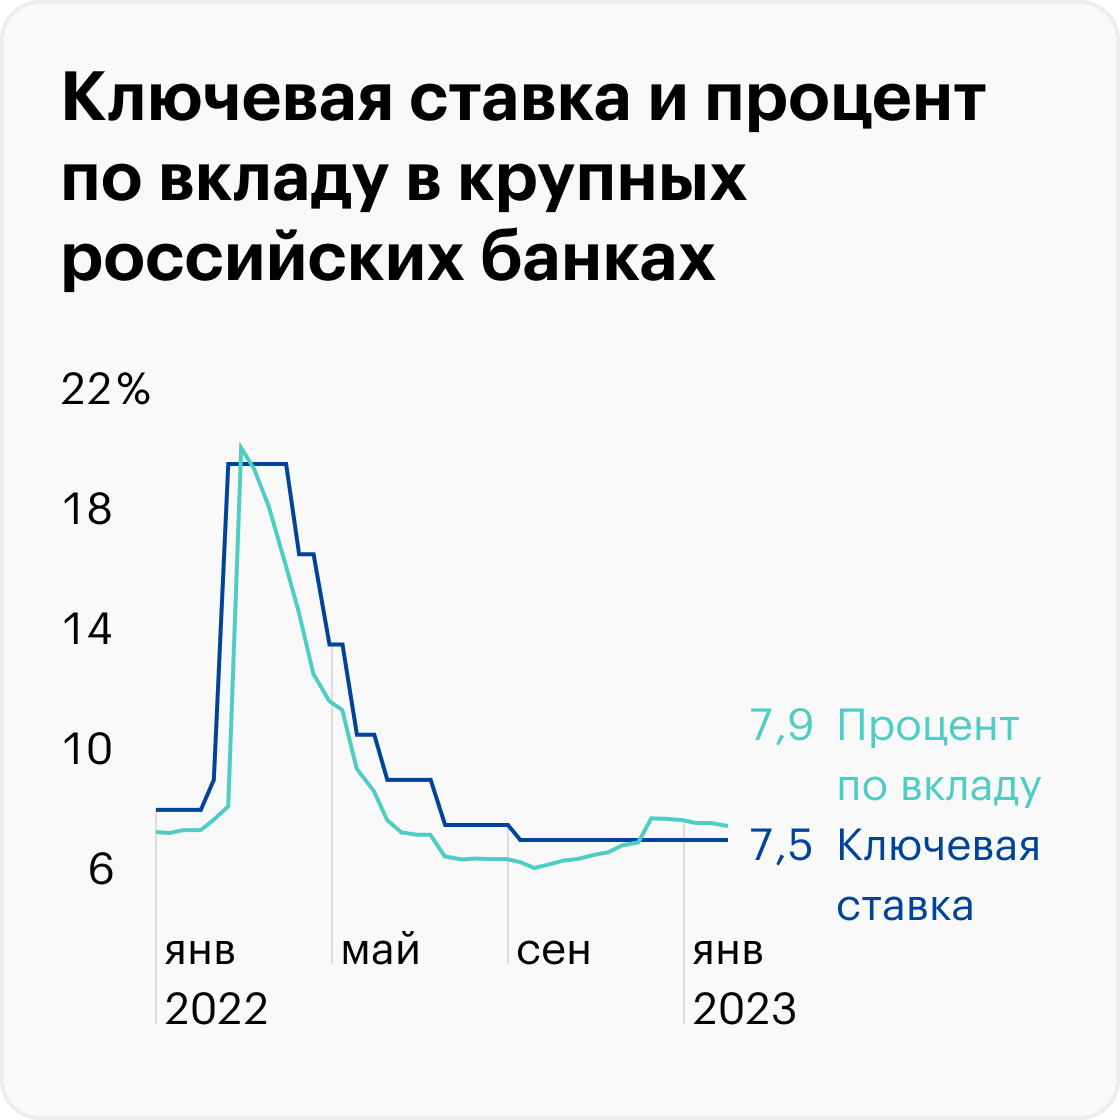 Источник: данные Банка России по ставке и вкладам